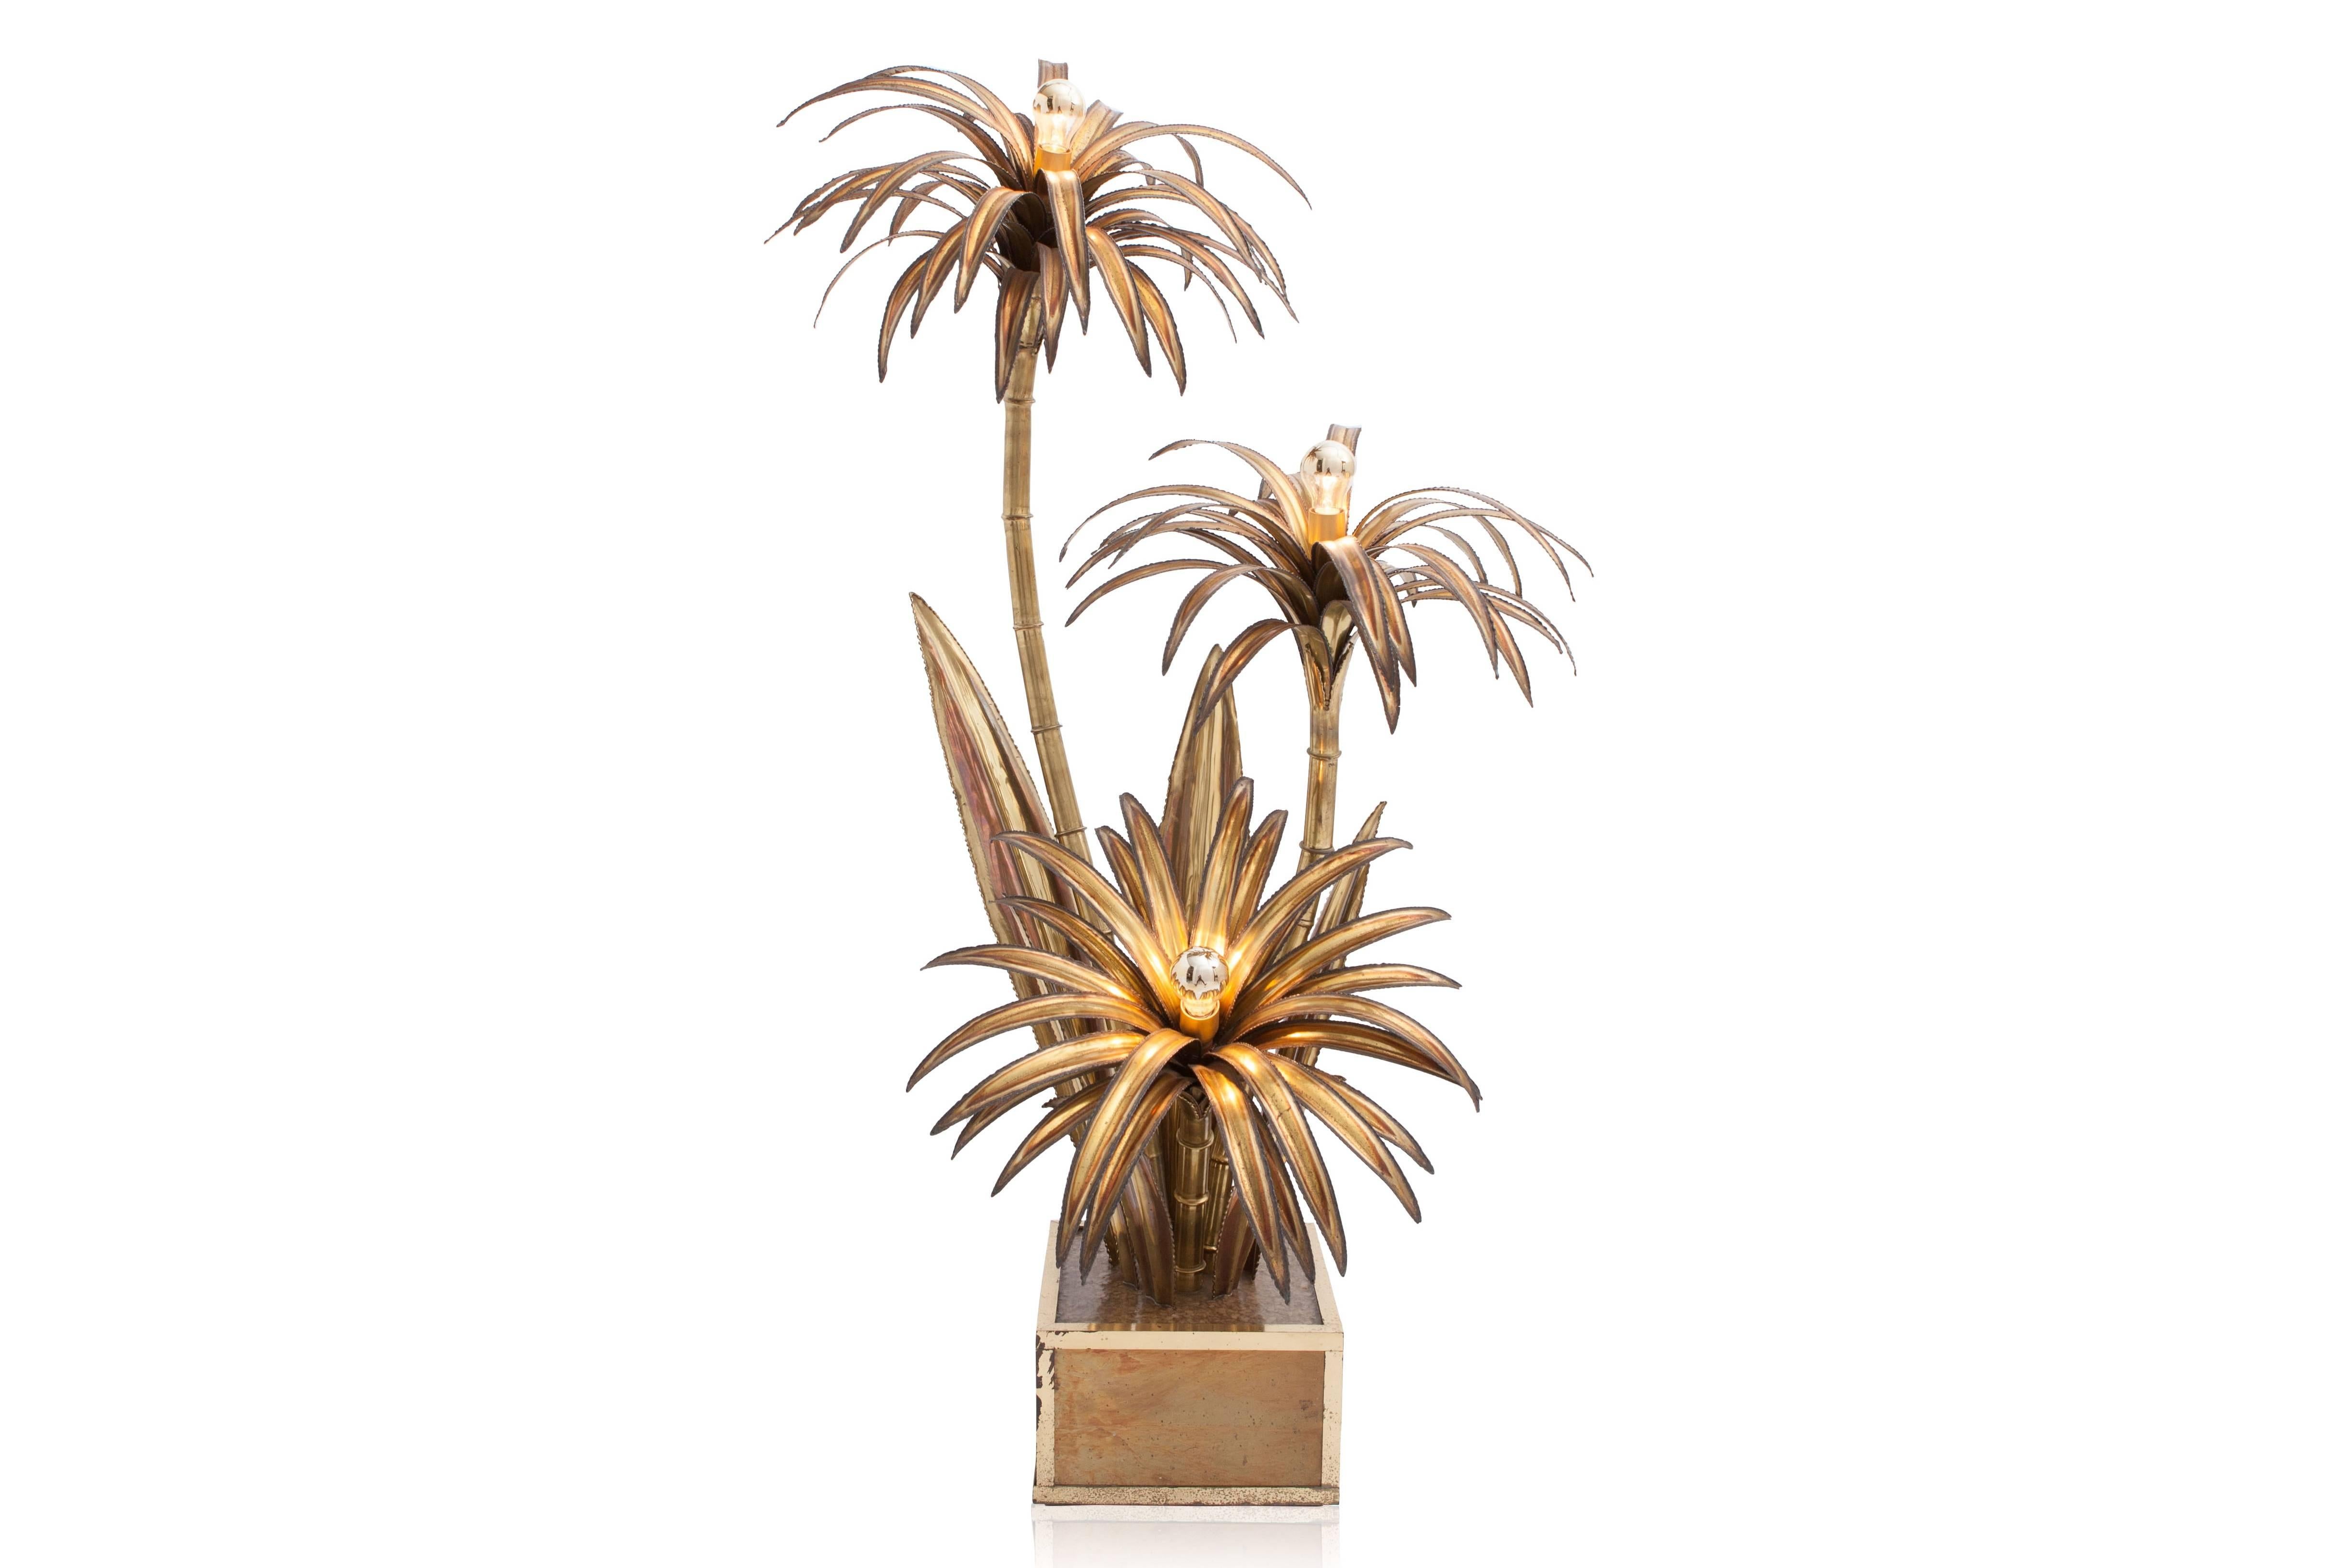 Brass triple stem palm tree floor lamp.
Maison Jansen, France, 1970s.
Hollywood Regency Glam, handmade.
Measures: H 175 cm, W 100 cm, D 90 cm.